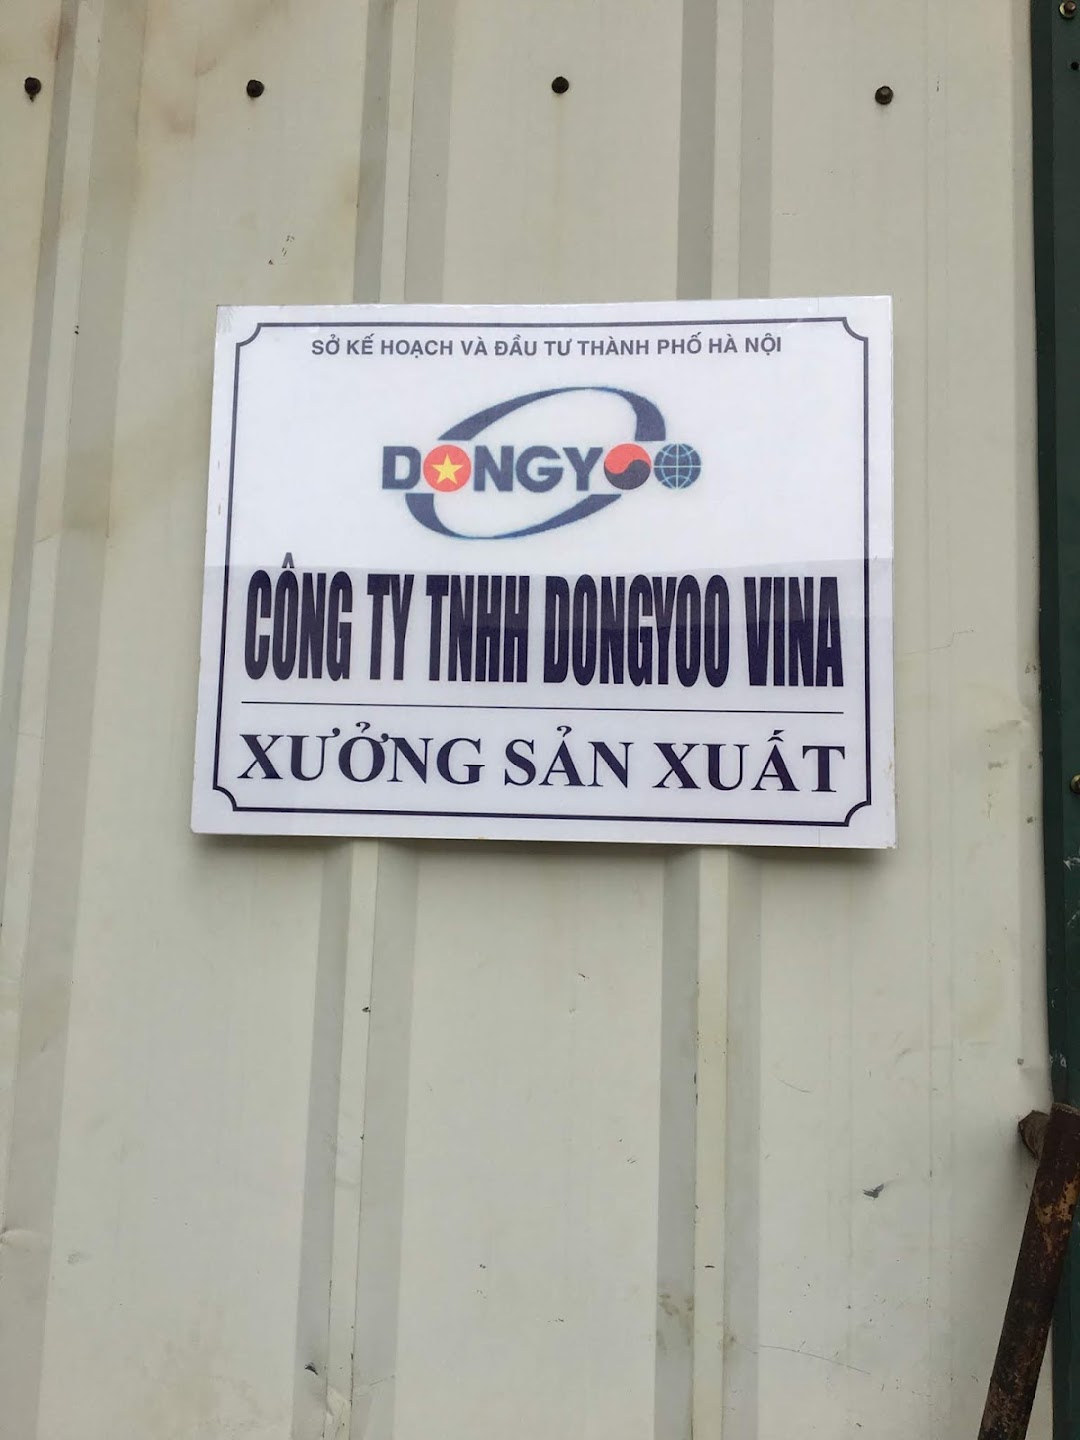 XƯỞNG SX - CÔNG TY TNHH DONGYOO VINA